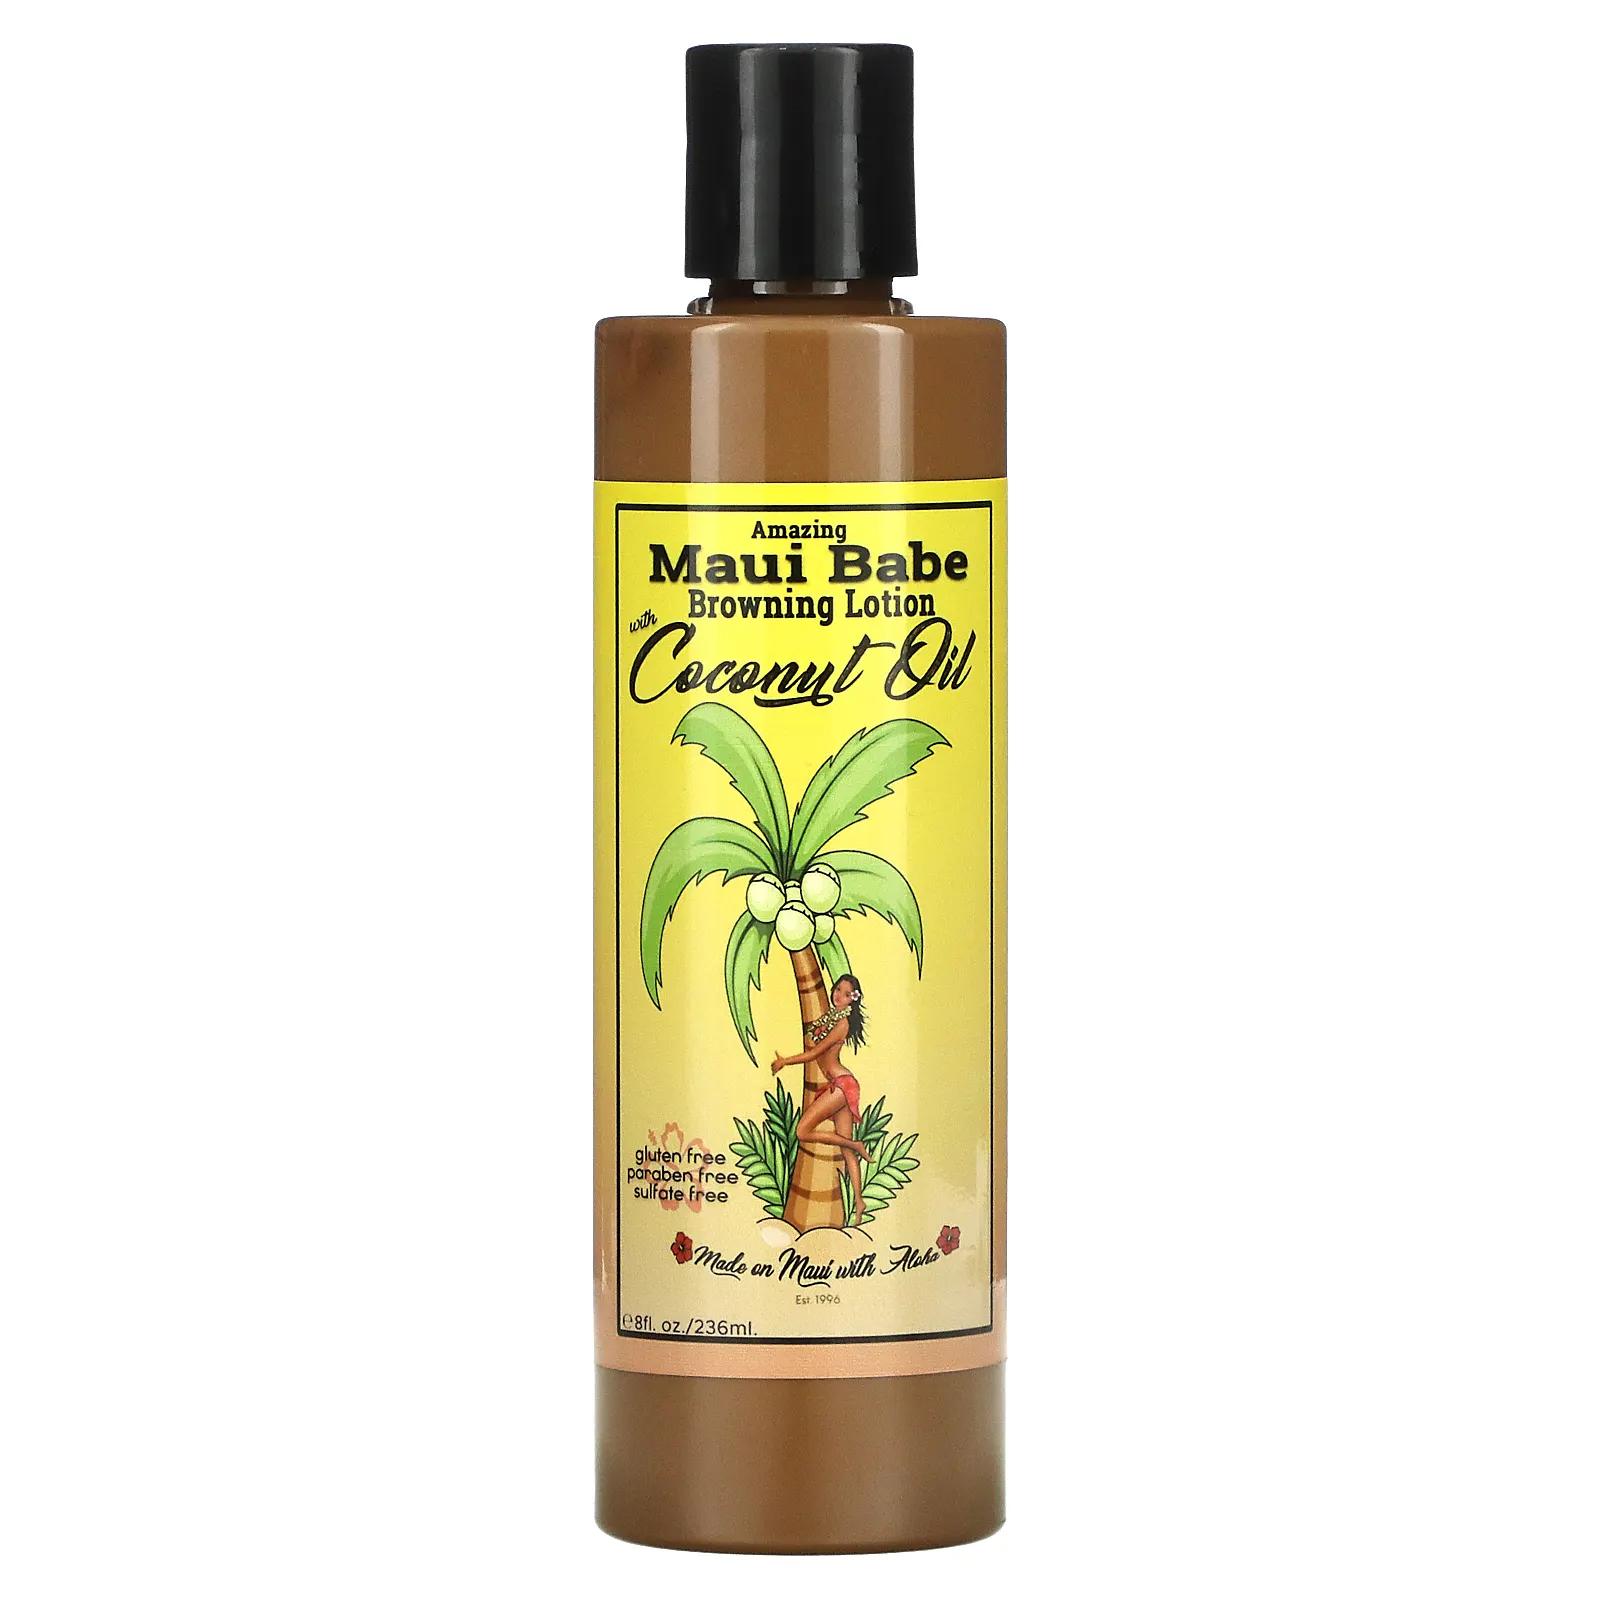 Maui Babe Amazing Browning Lotion with Coconut Oil 8 fl oz (236 ml) maui babe лосьон для придания коричневого цвета полностью натуральный быстрый темный загар 4 жидких унции